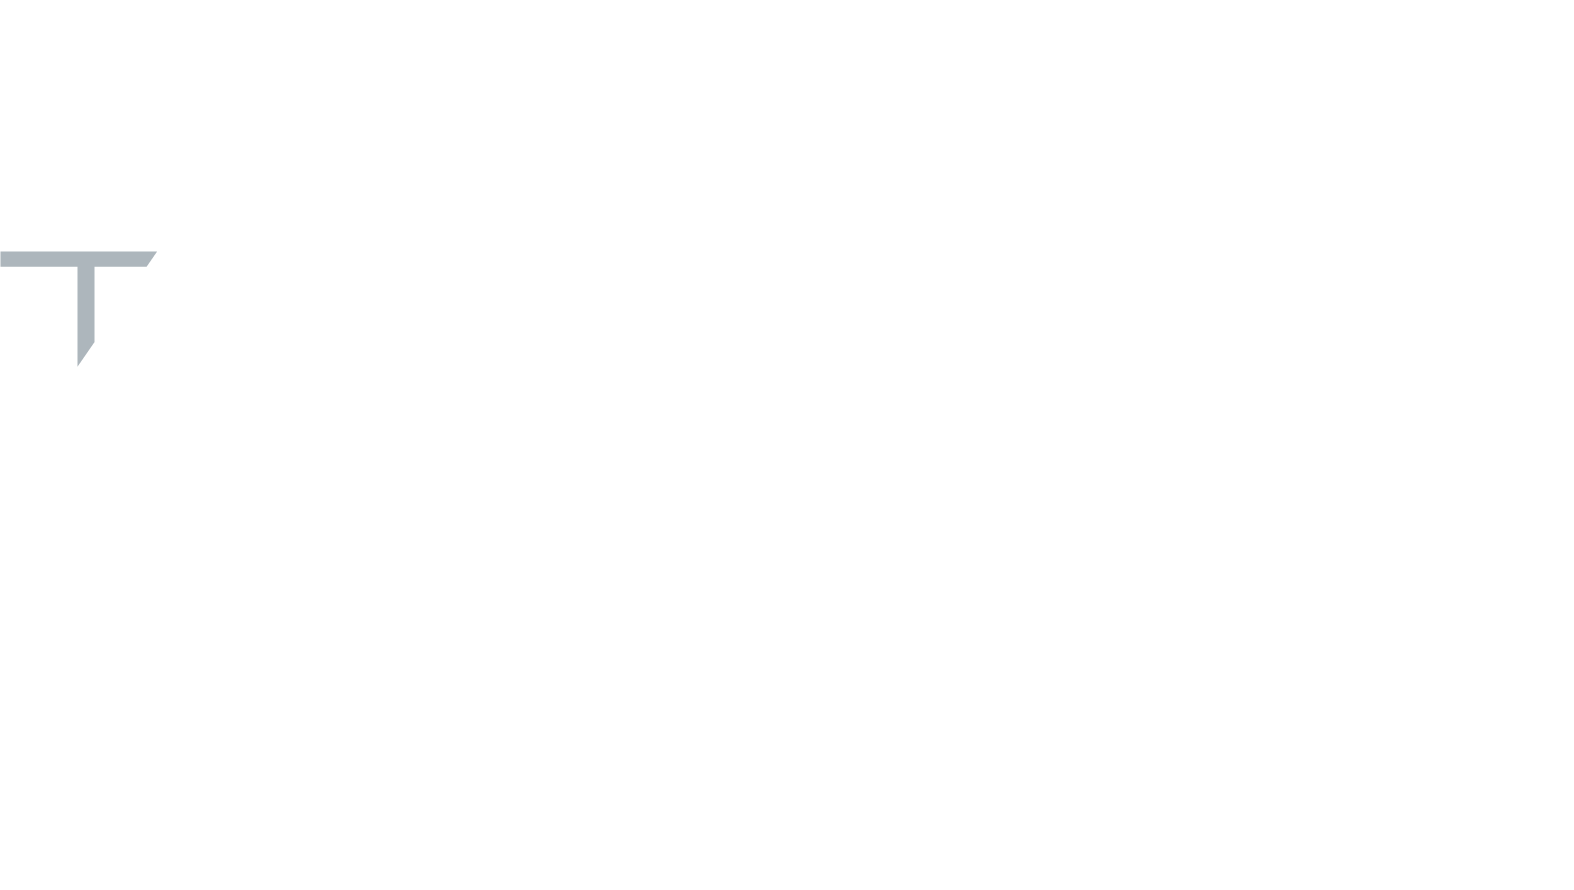 T-POSCHEN Marketing & Werbung